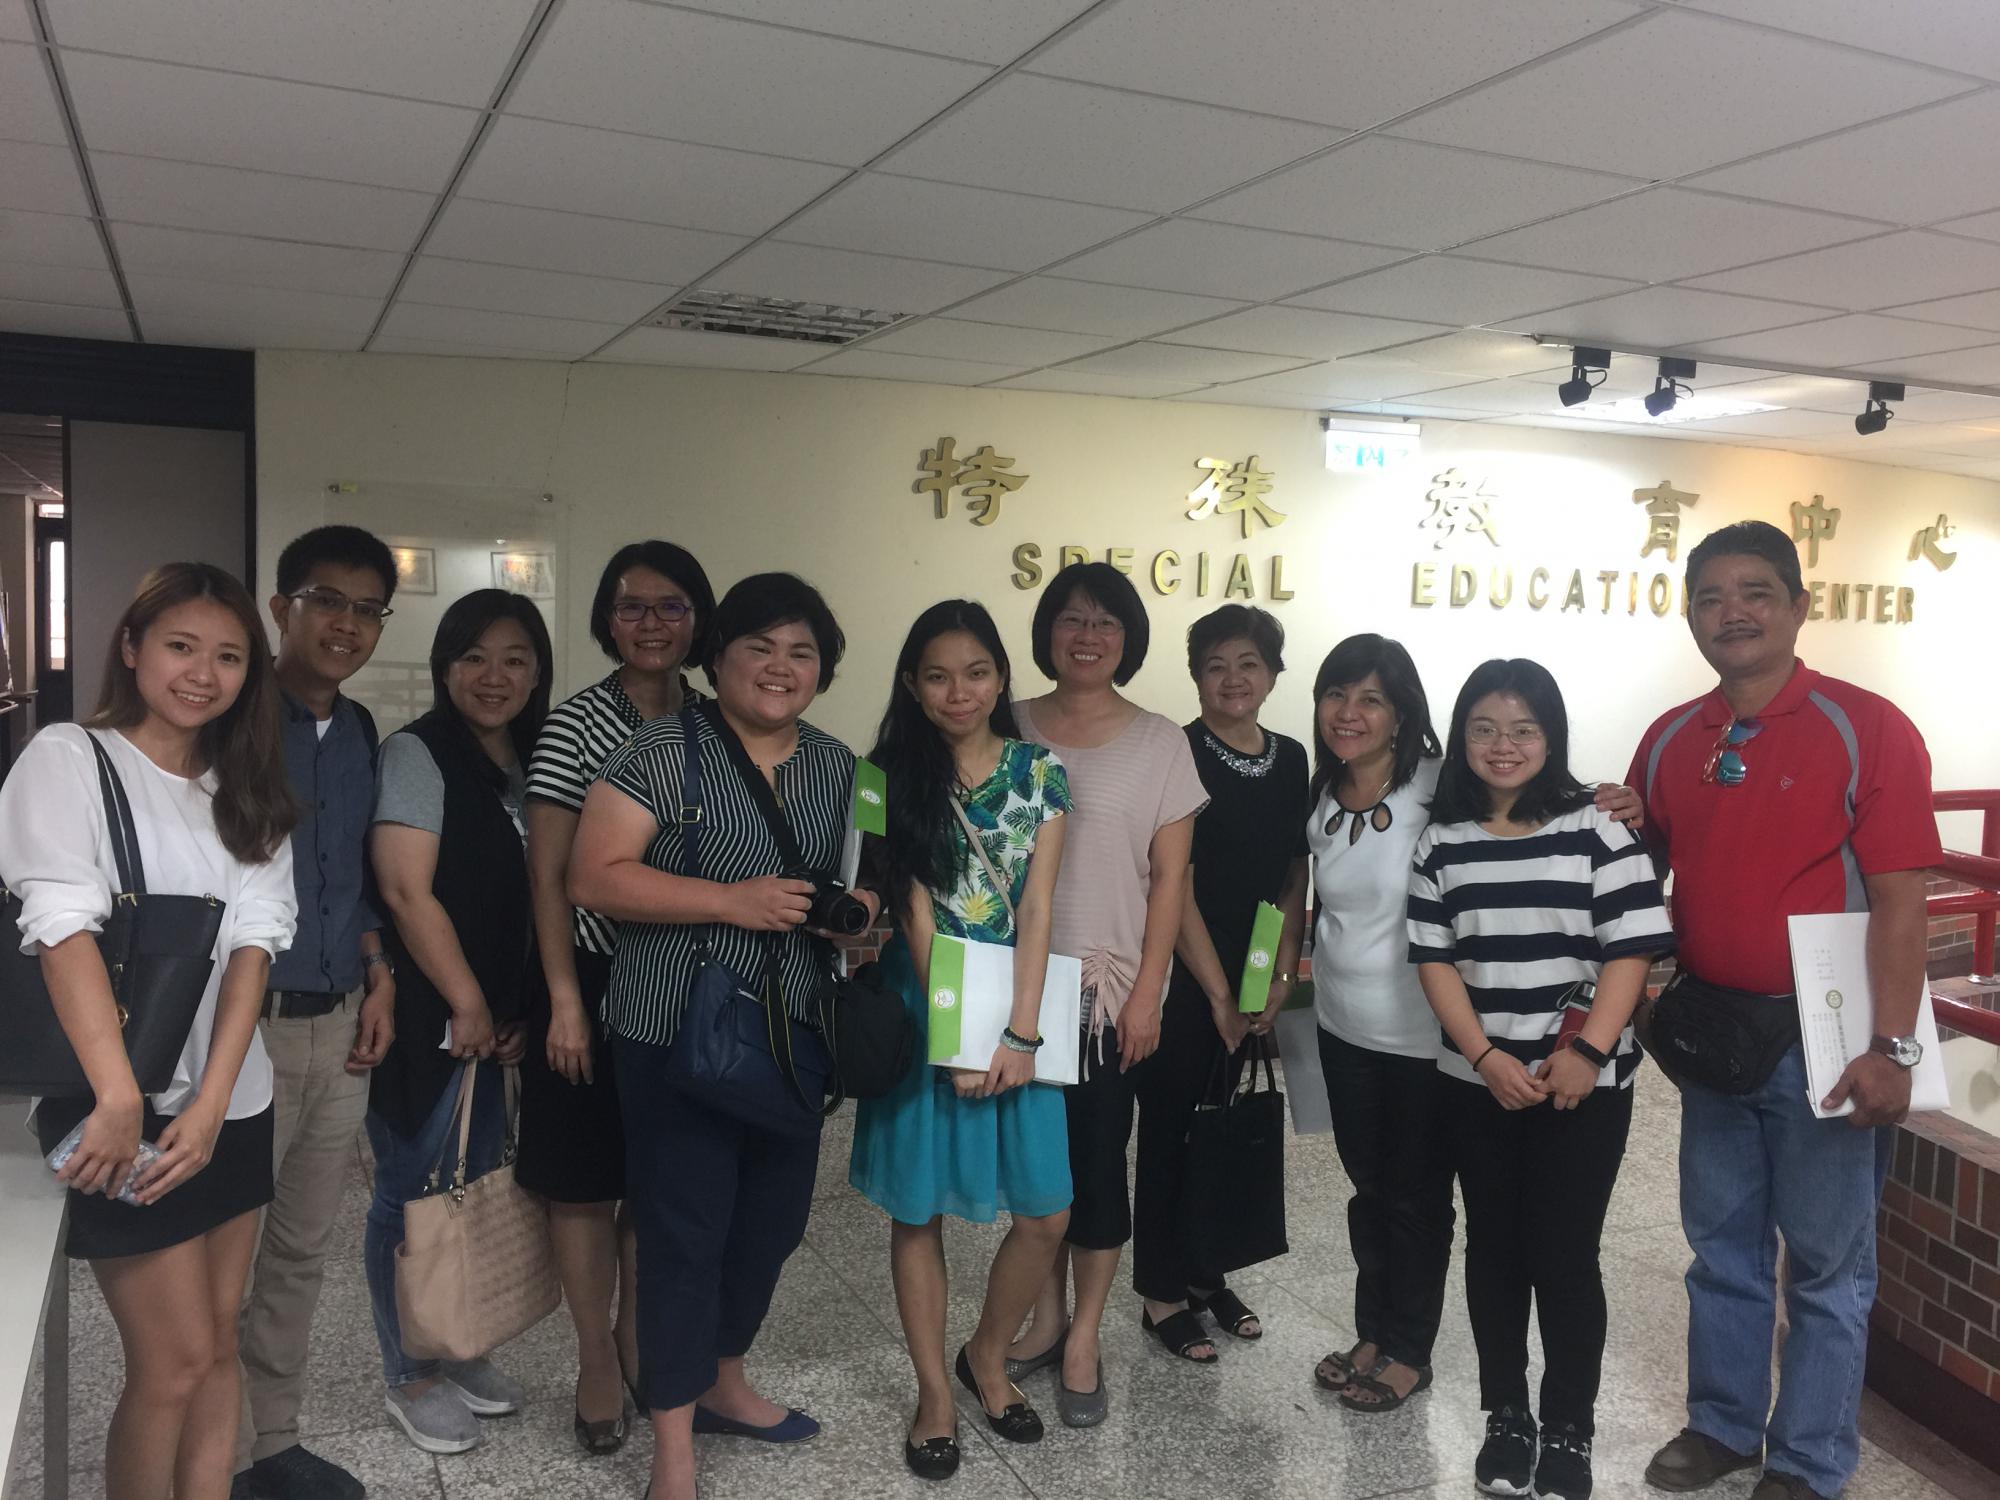 菲律賓大學教育學院Myra Tantengco教授帶領一行7人蒞臨本中心參訪活動照片